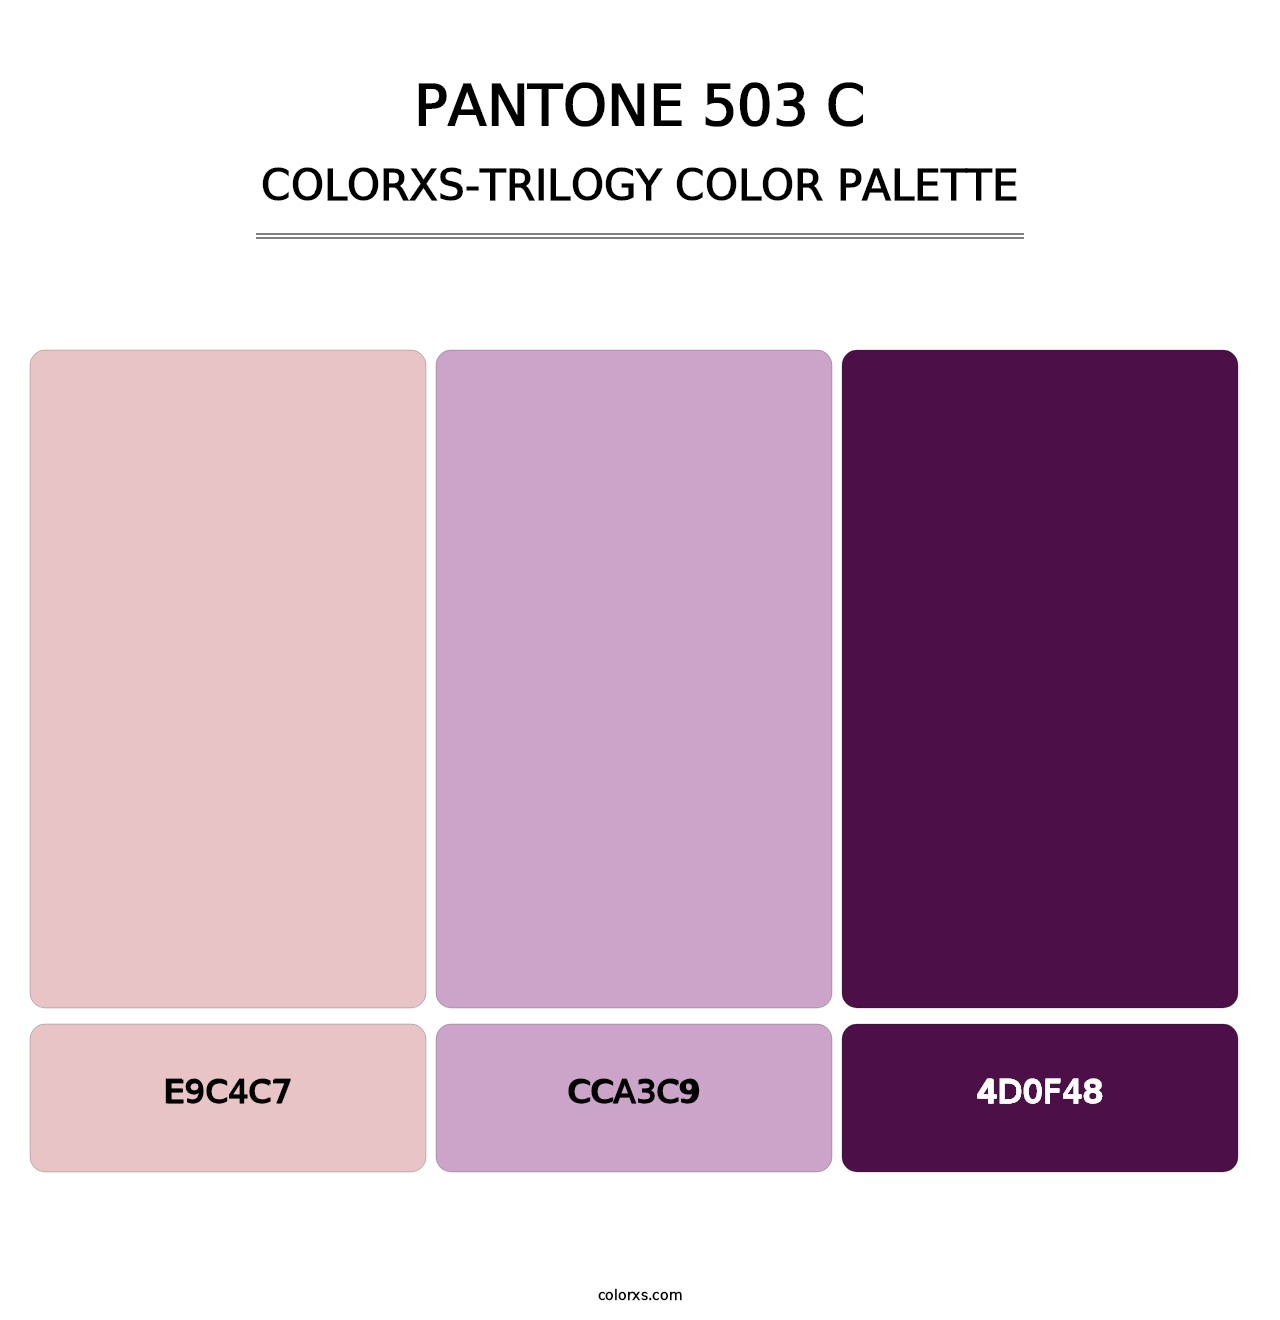 PANTONE 503 C - Colorxs Trilogy Palette